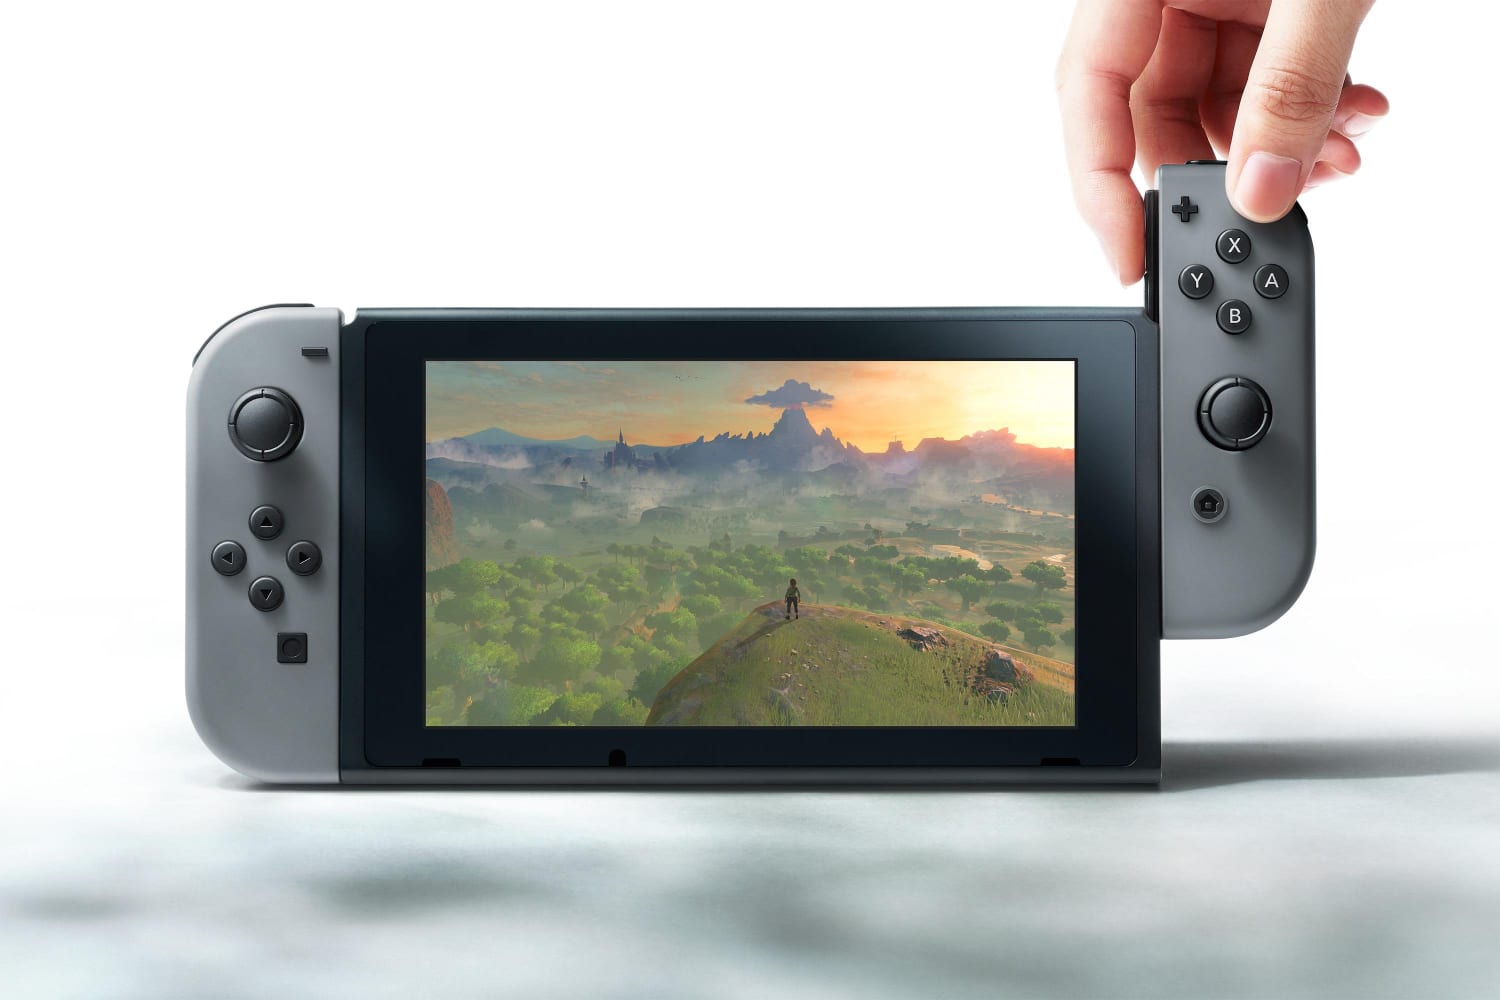 Nintendo lance en octobre sa console de jeu Switch améliorée - Le Temps